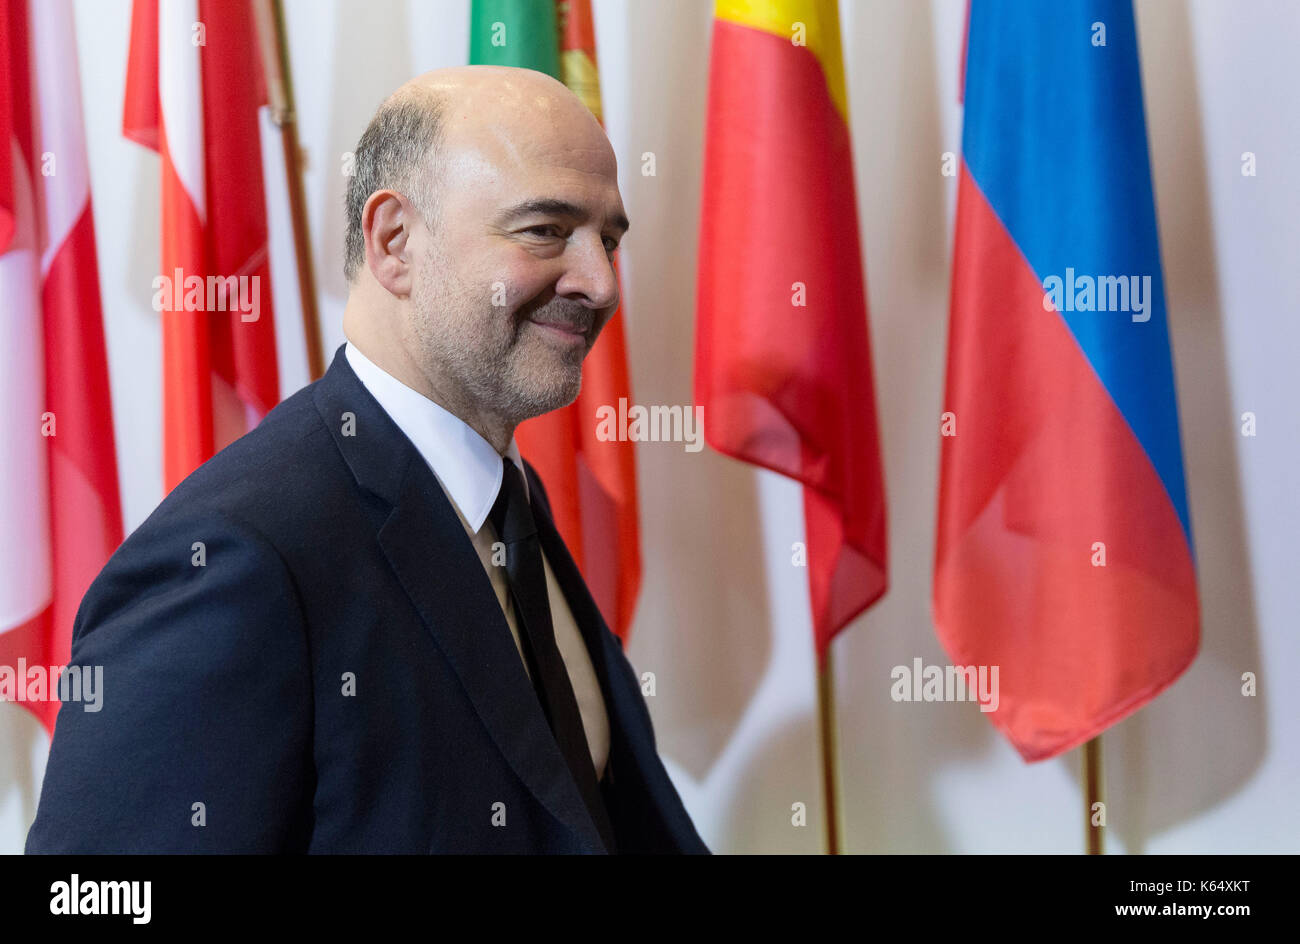 Brüssel, Belgien, am 2015/02/21: Pierre Moscovici, der Europäische Kommissar für Wirtschaft und Finanzen, Steuern und Zölle, der Teilnahme an einem Eurogr Stockfoto